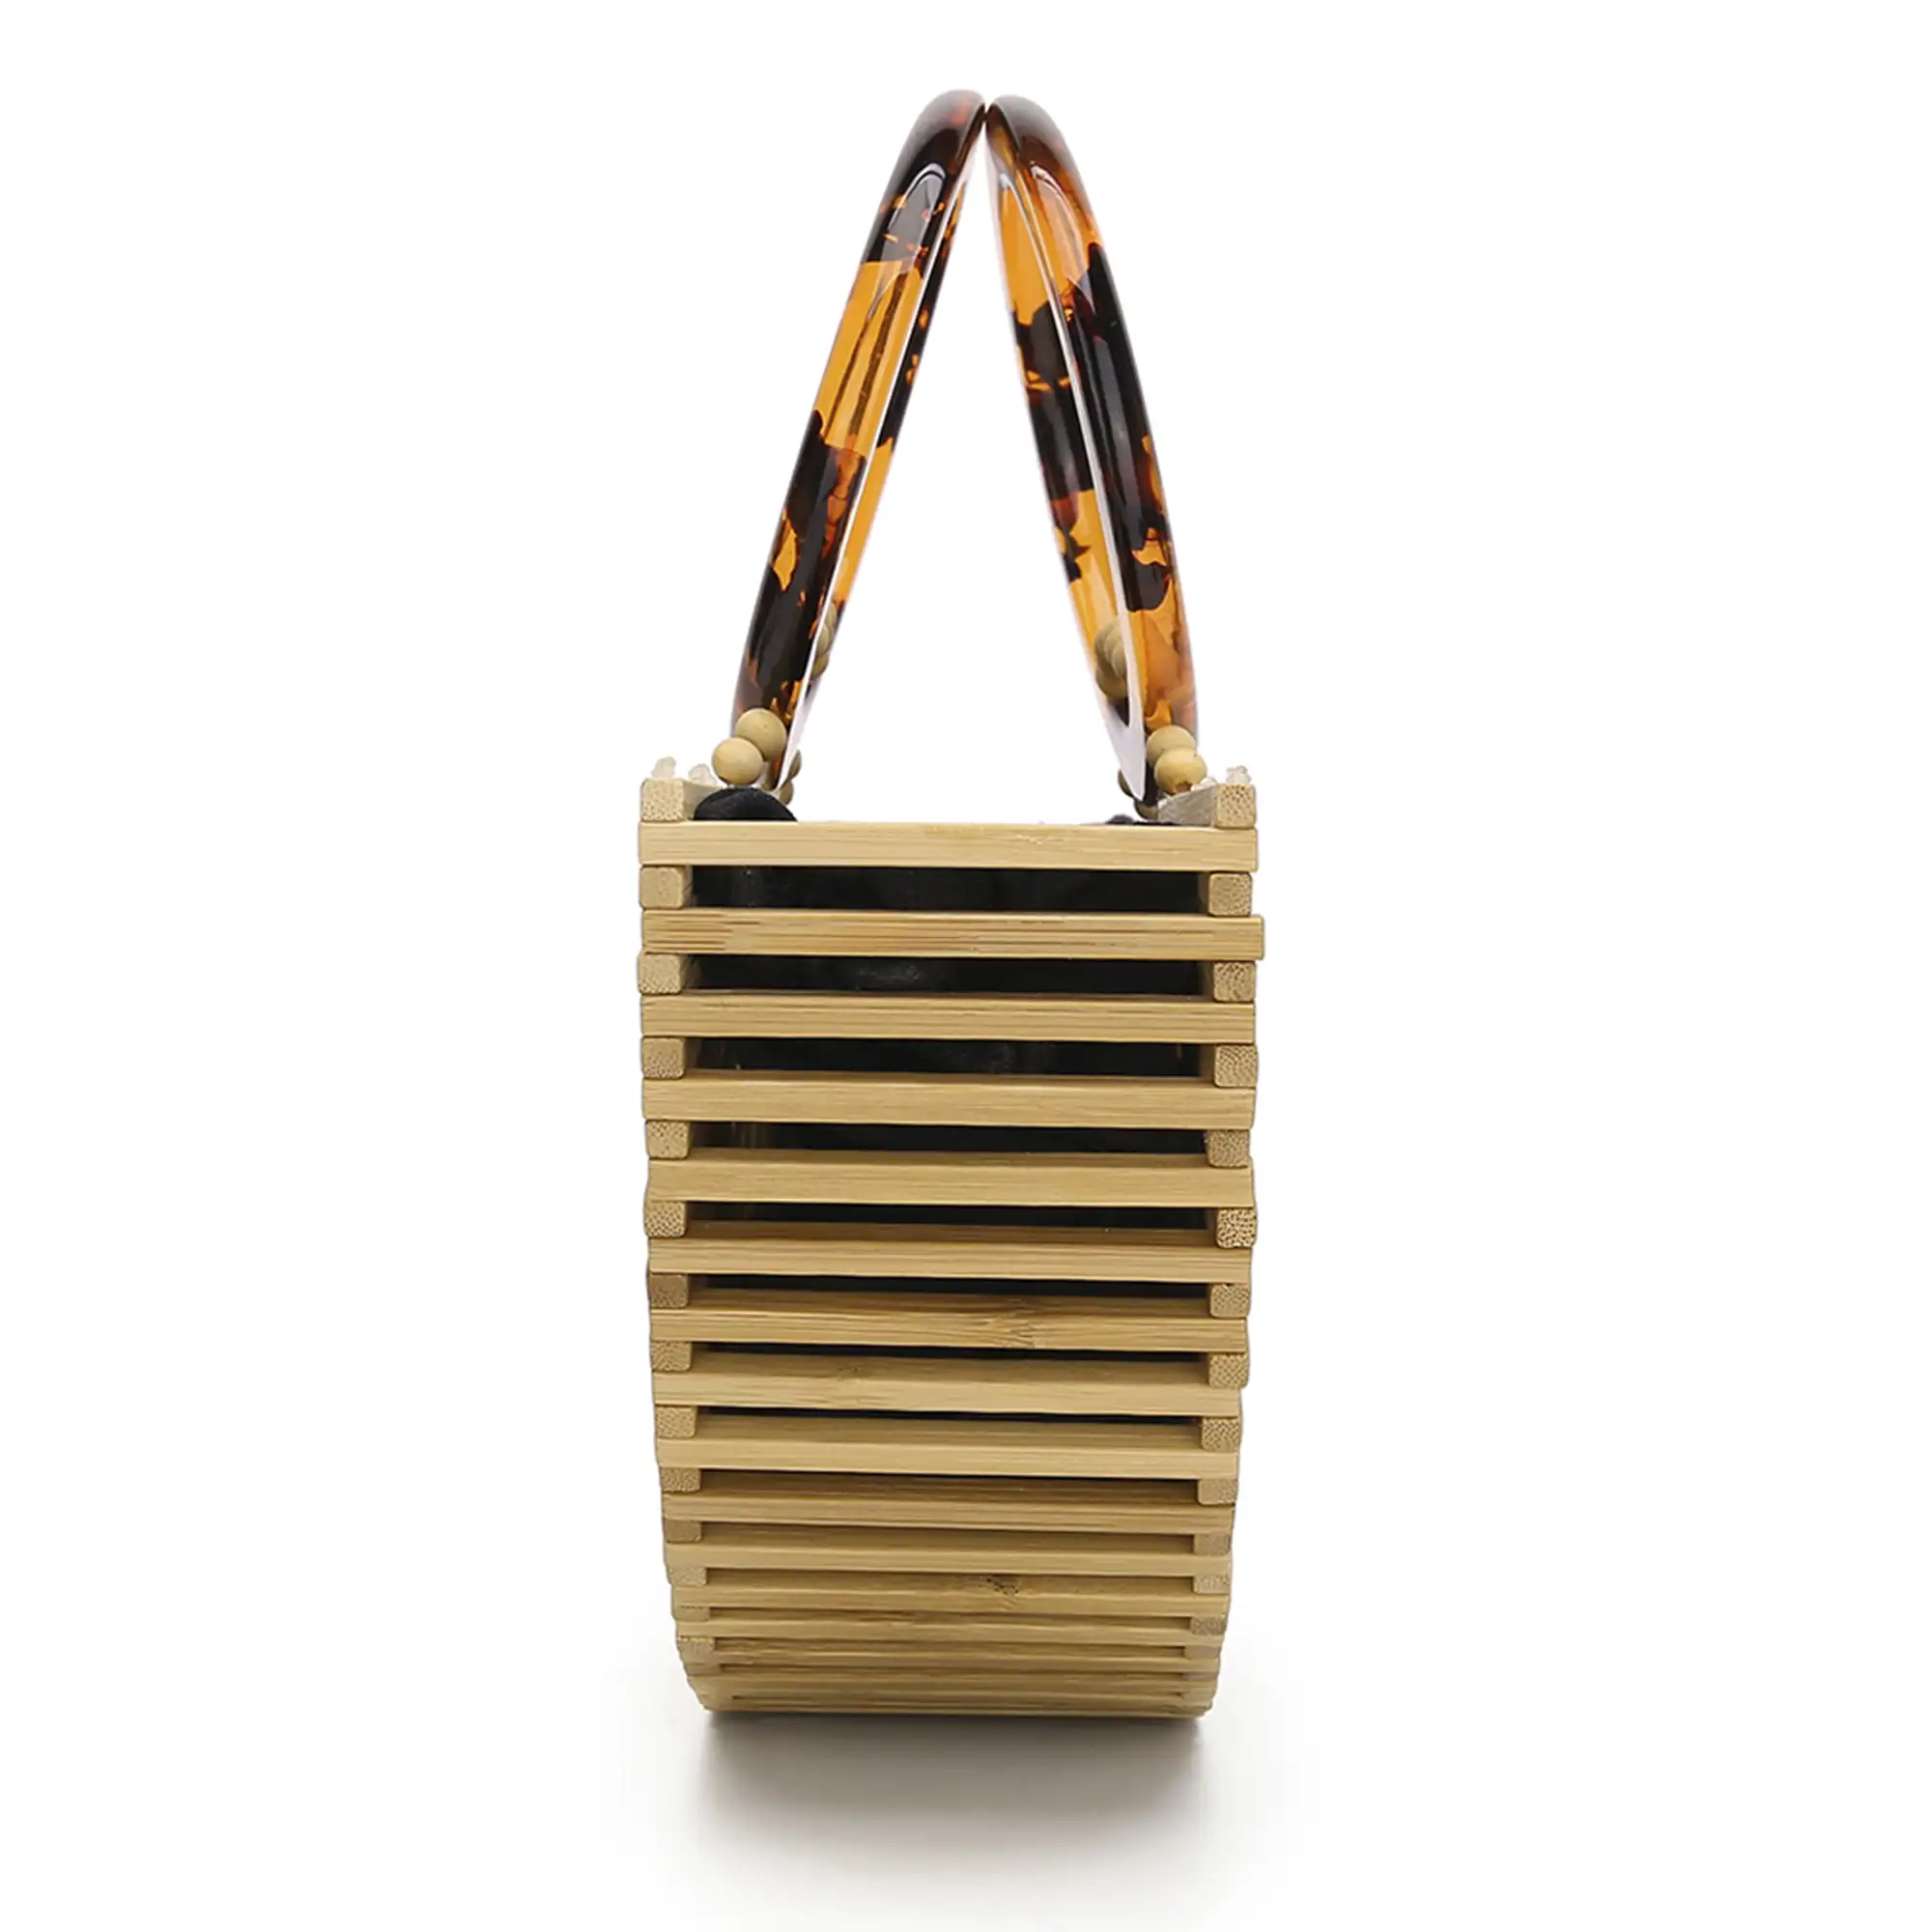 Zogno bolso de mano en madera de bambú.